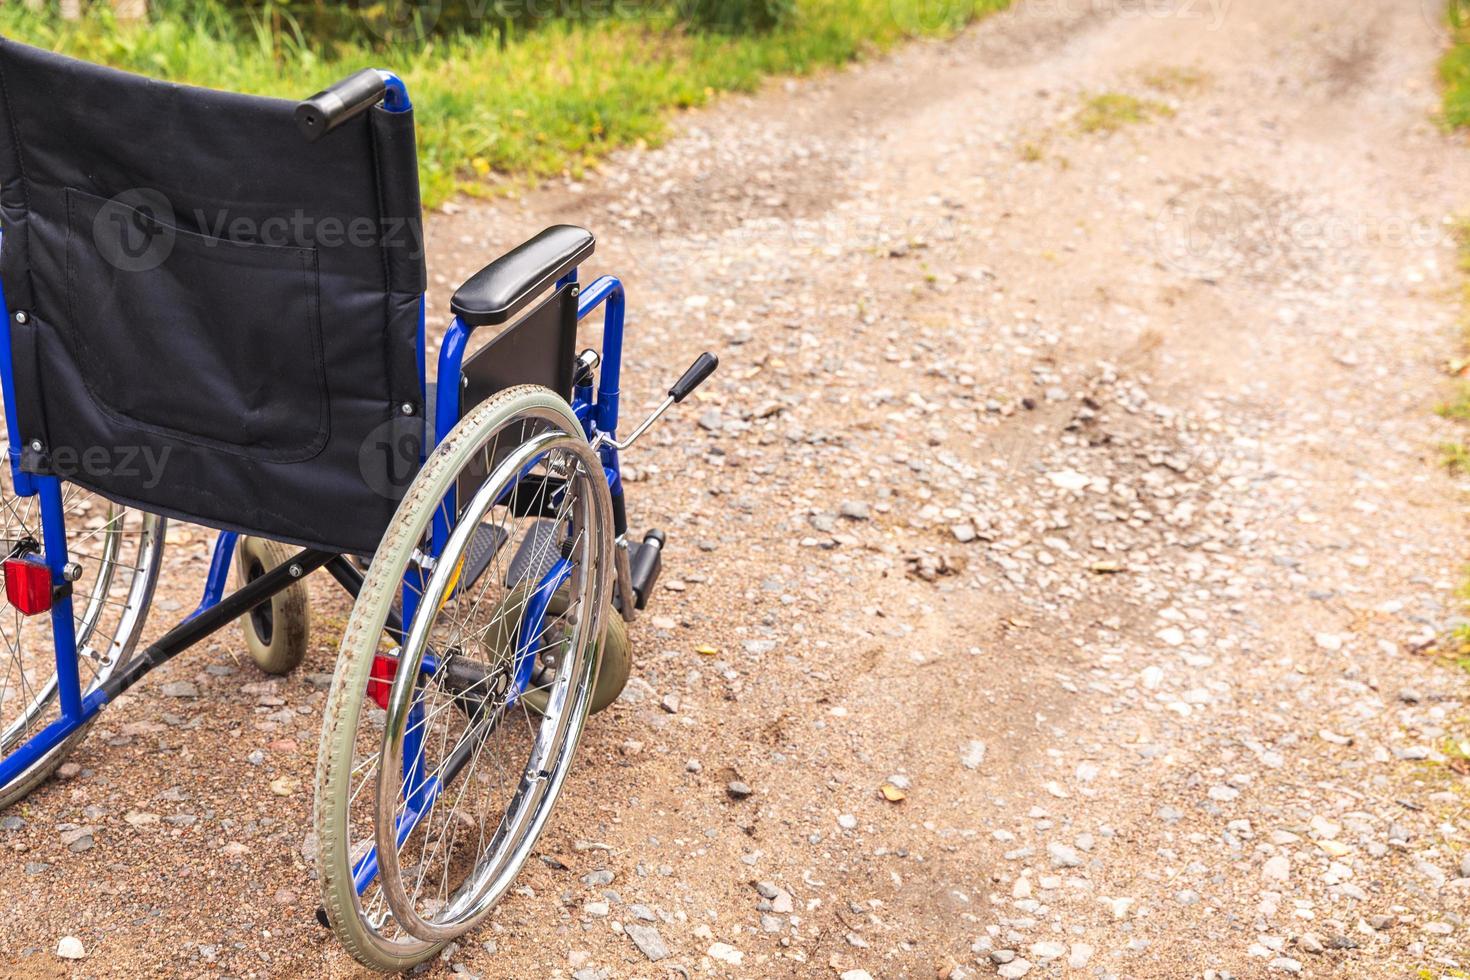 fauteuil roulant vide debout sur la route en attente de services aux patients. fauteuil roulant pour personne handicapée garé à l'extérieur. accessible pour personne handicapée. concept médical de soins de santé. photo